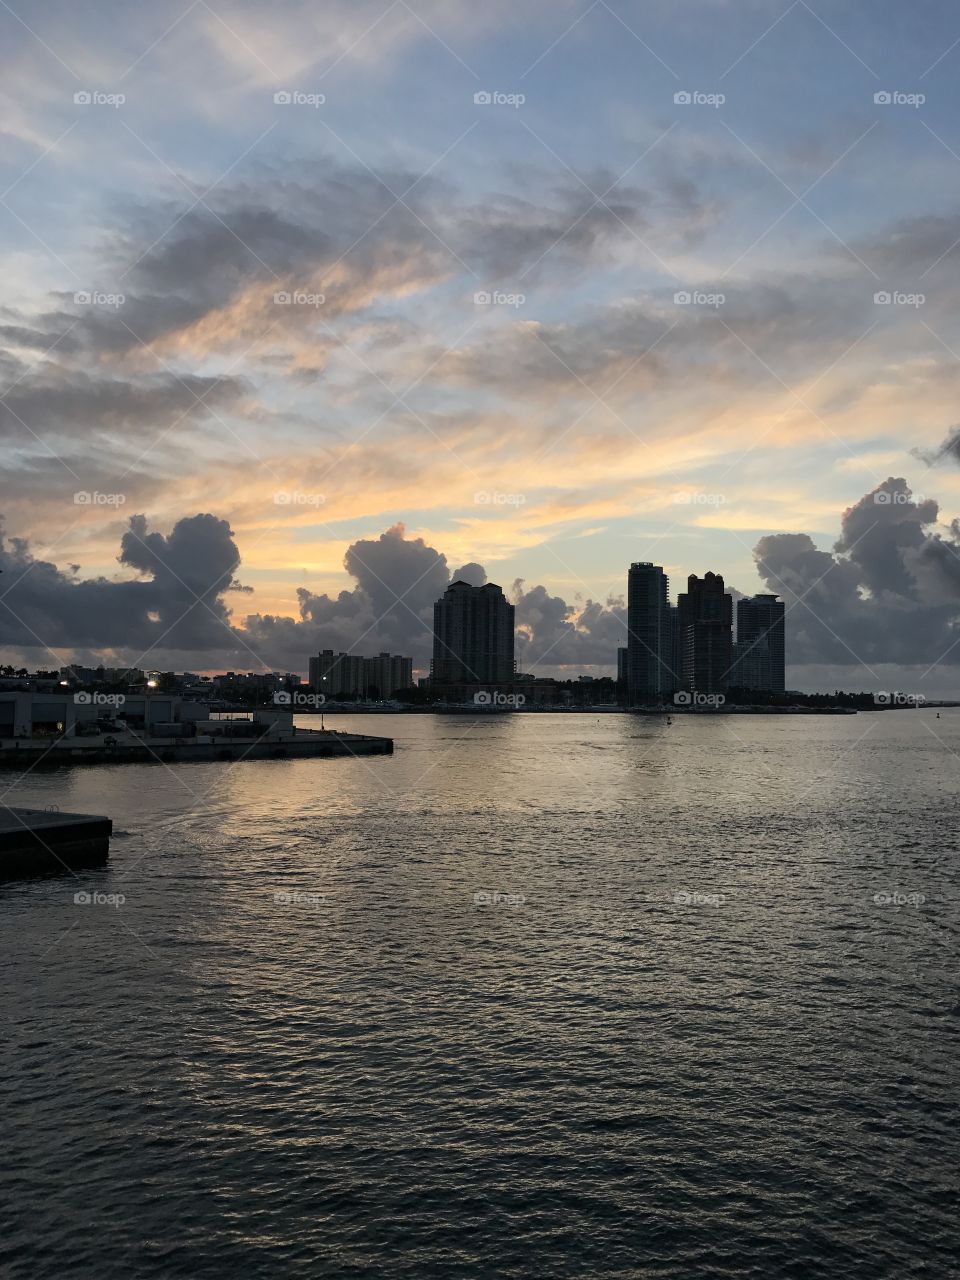 Port of Miami Beach at sunrise 